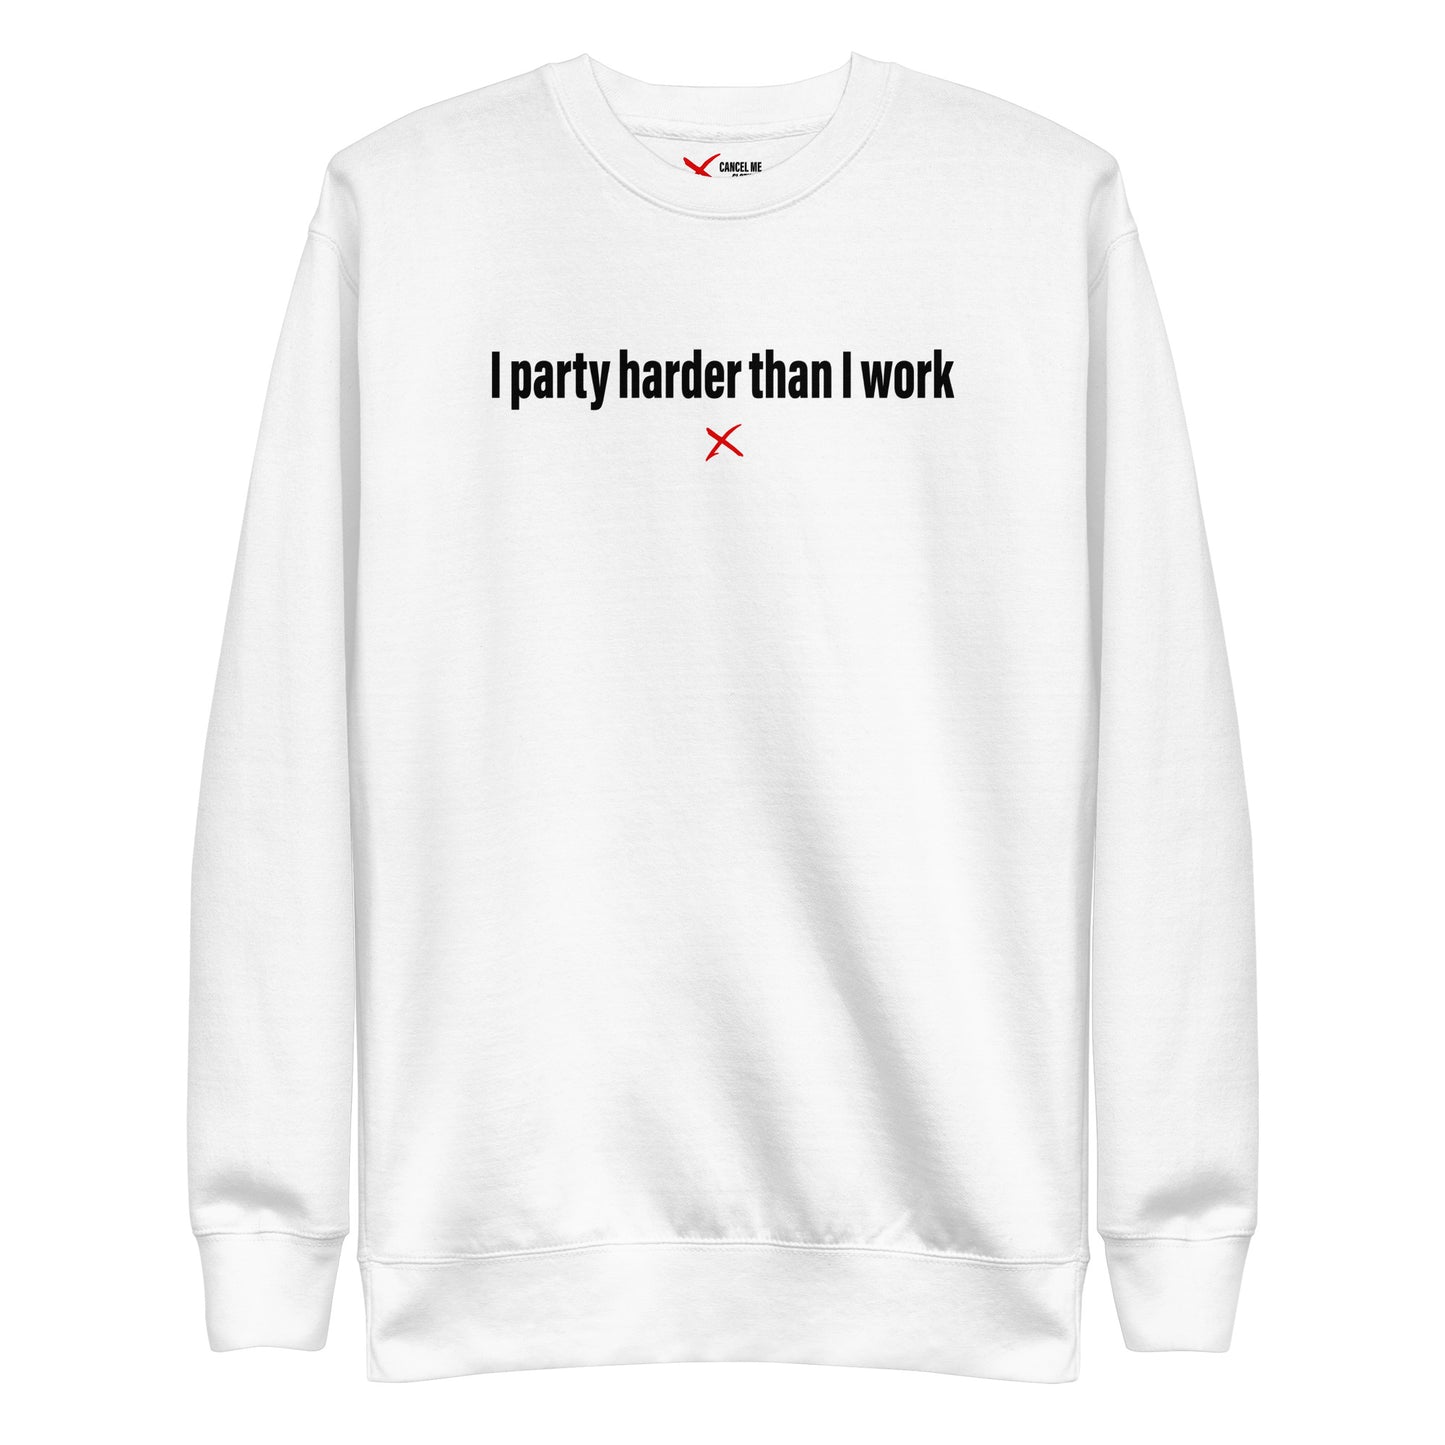 I party harder than I work - Sweatshirt